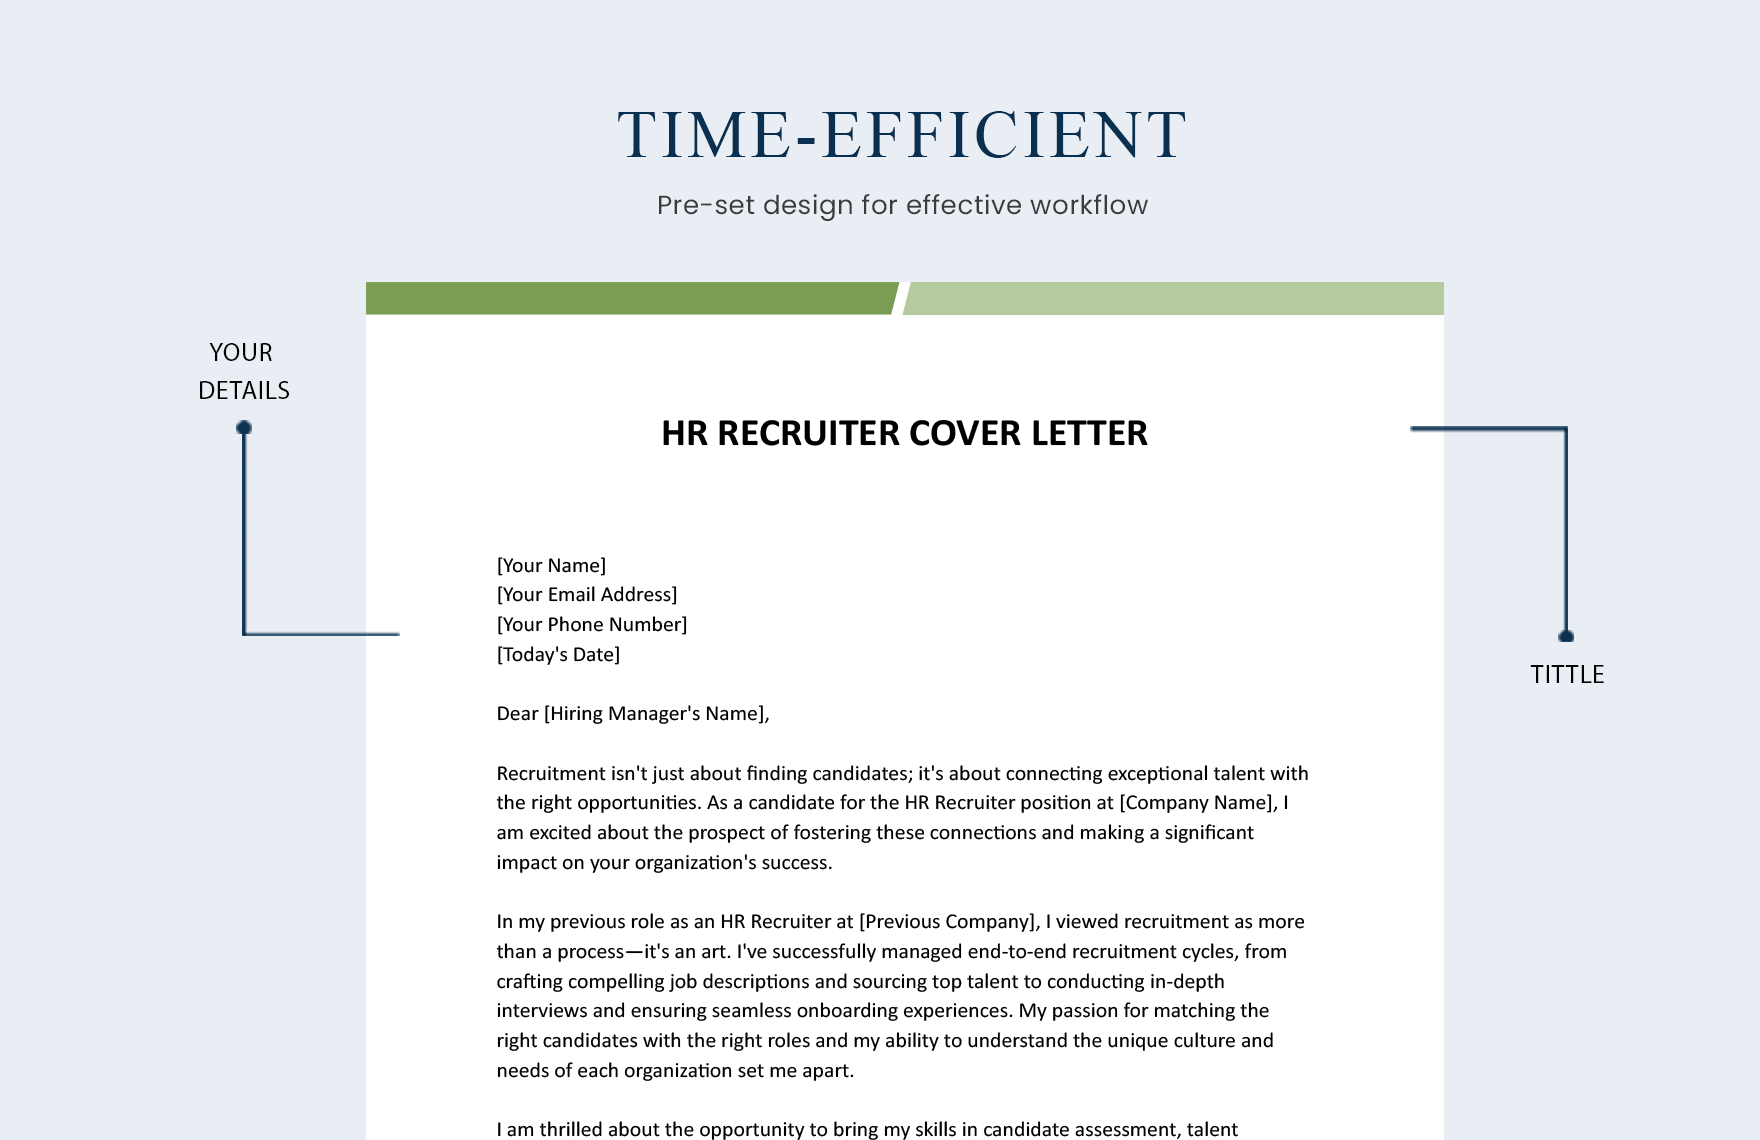 HR Recruiter Cover Letter